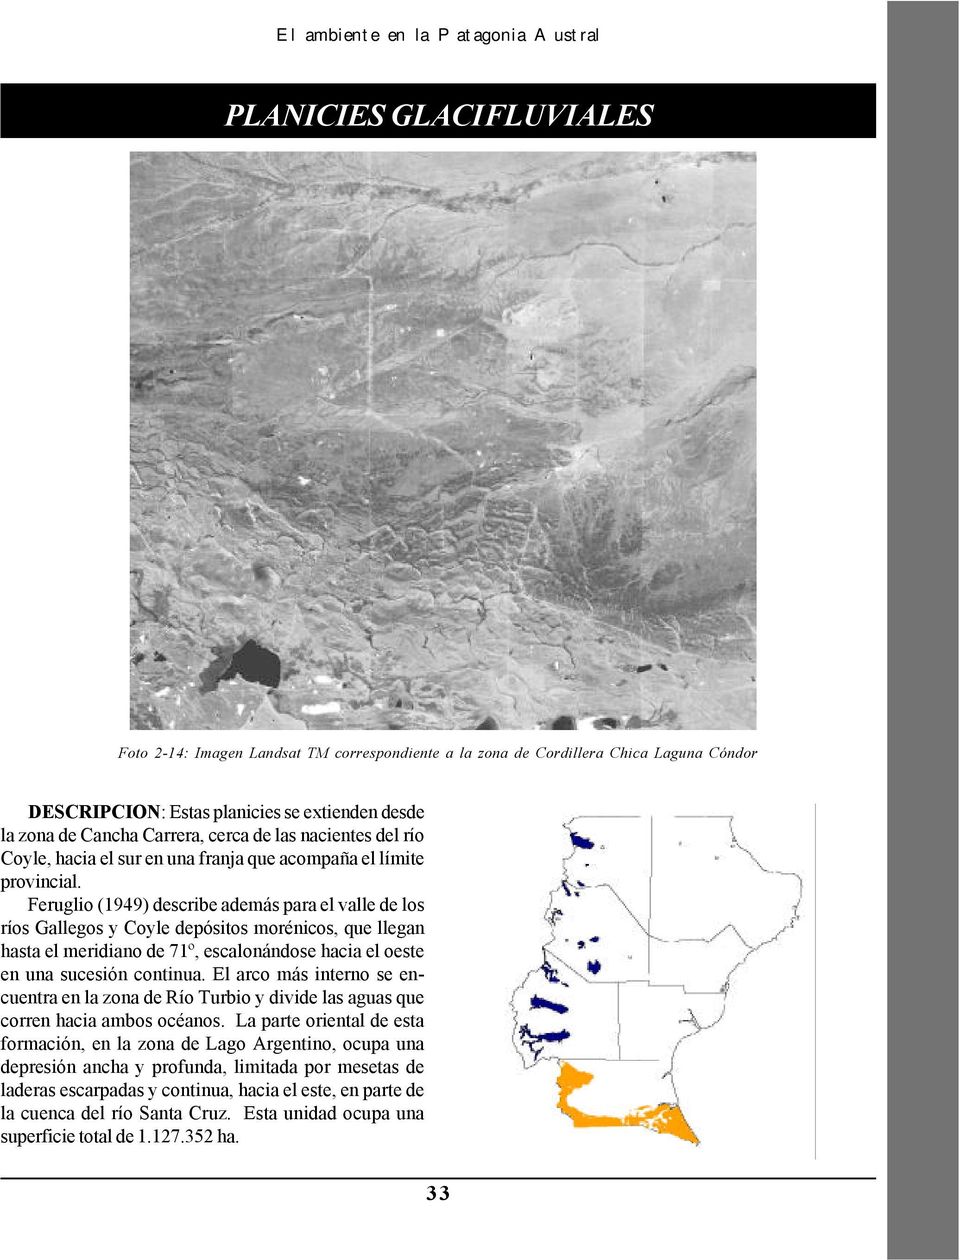 Feruglio (1949) describe además para el valle de los ríos Gallegos y Coyle depósitos morénicos, que llegan hasta el meridiano de 71º, escalonándose hacia el oeste en una sucesión continua.